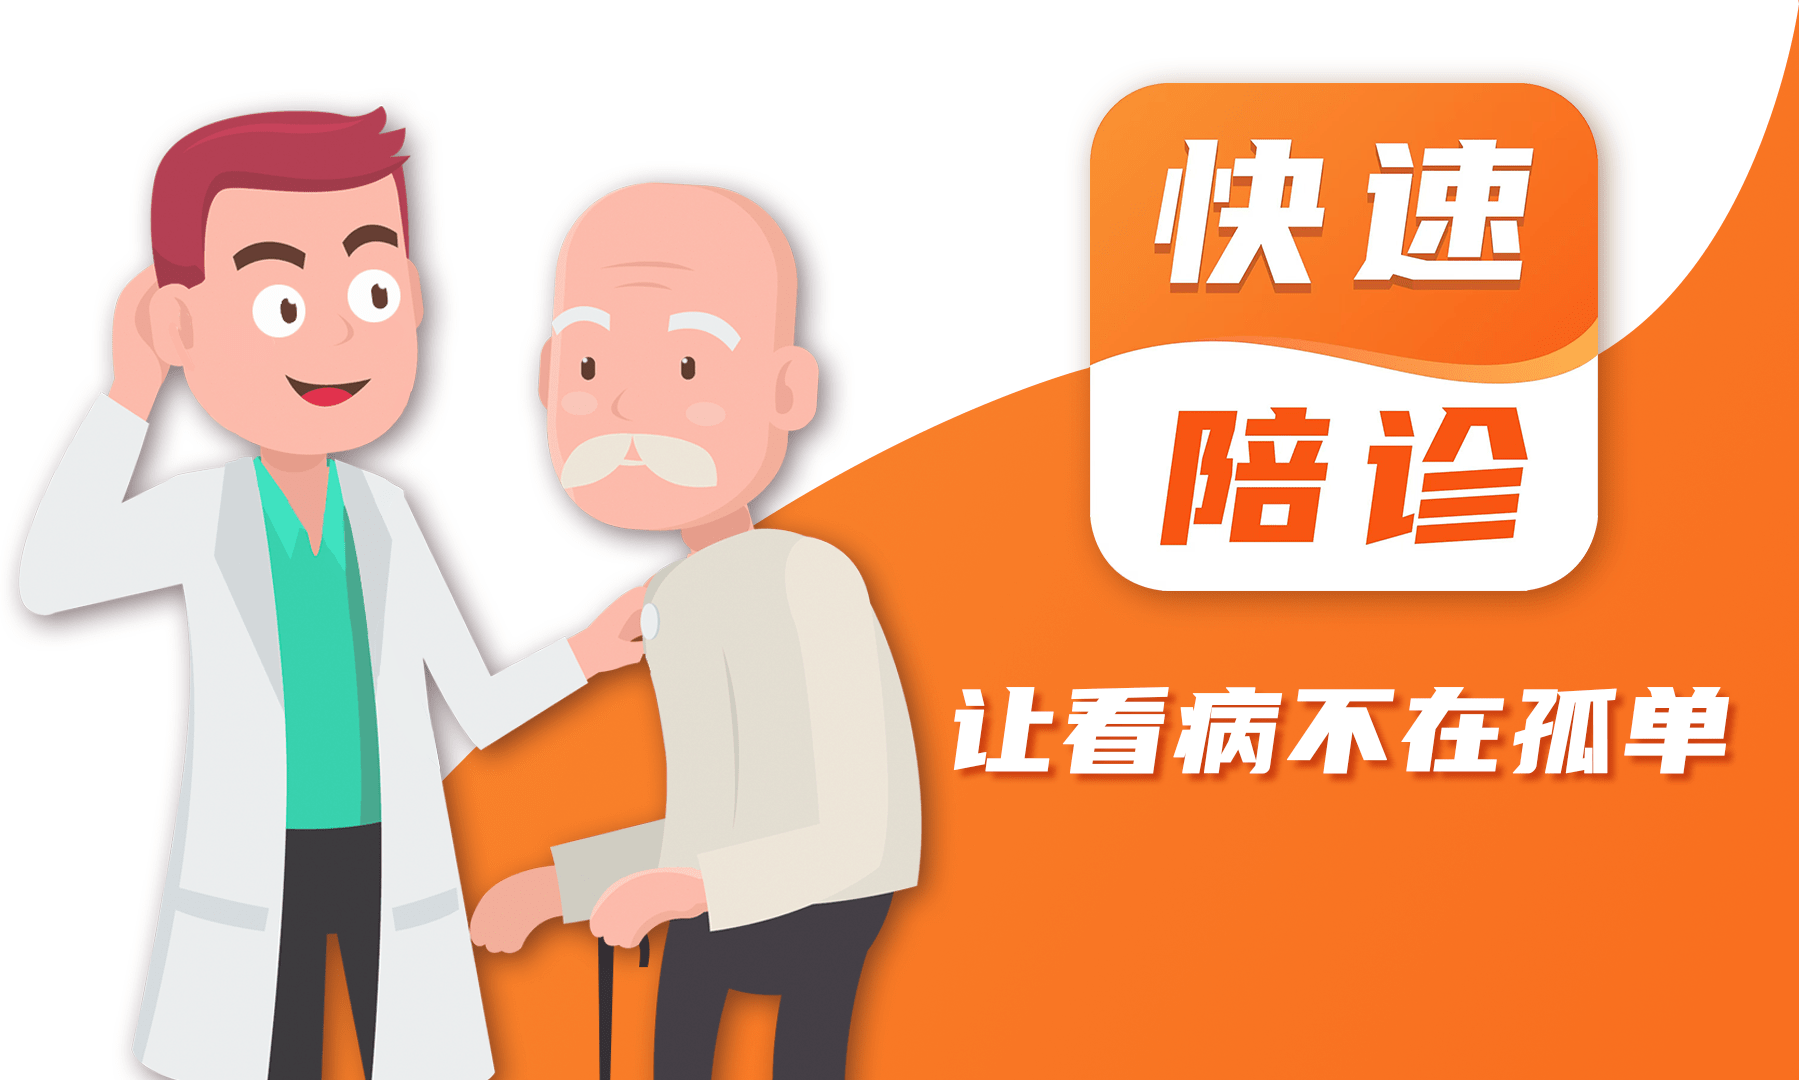 关于大庆市人民医院医院跑腿陪诊挂号，诚信靠谱合理收费的信息